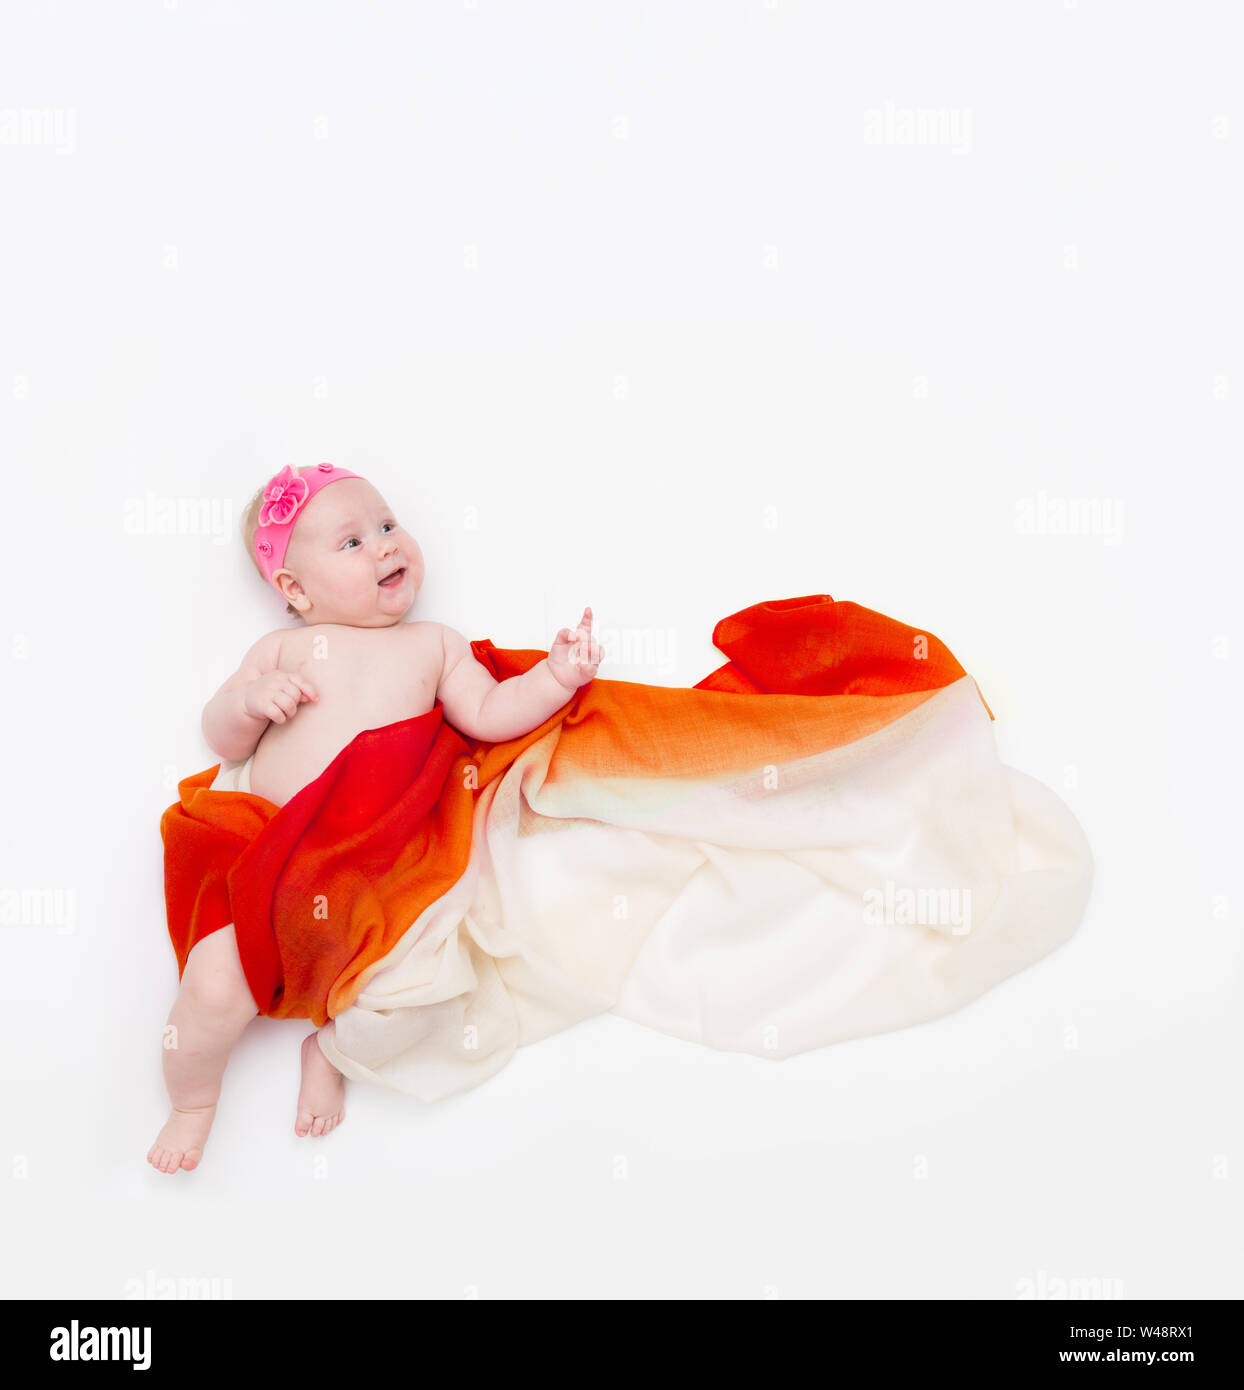 Vista superior del lindo bebé lactante envuelto en una bufanda naranja apuntando hacia arriba. Foto de stock